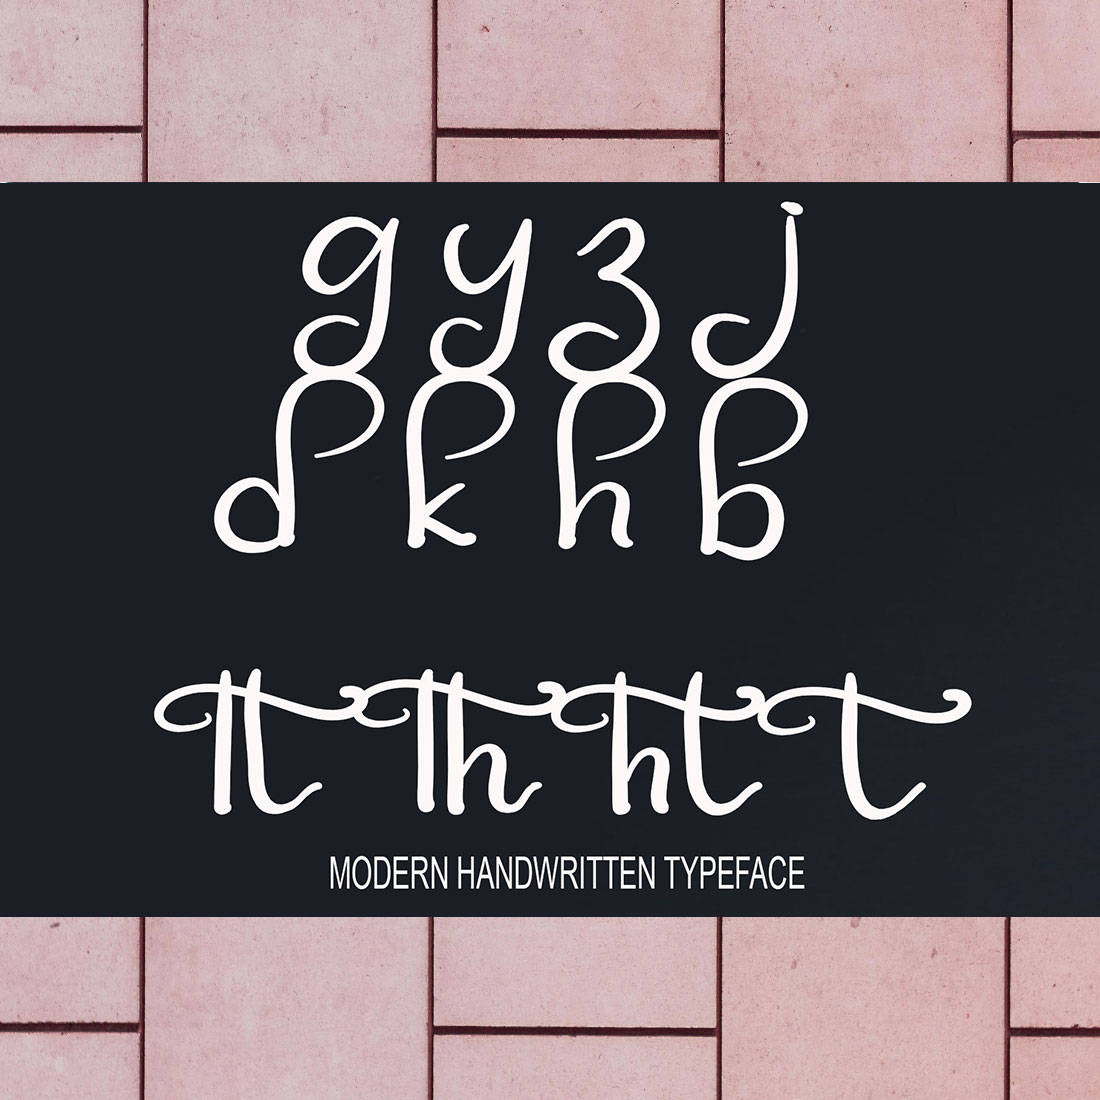 Agukisy Script Signature Font details.